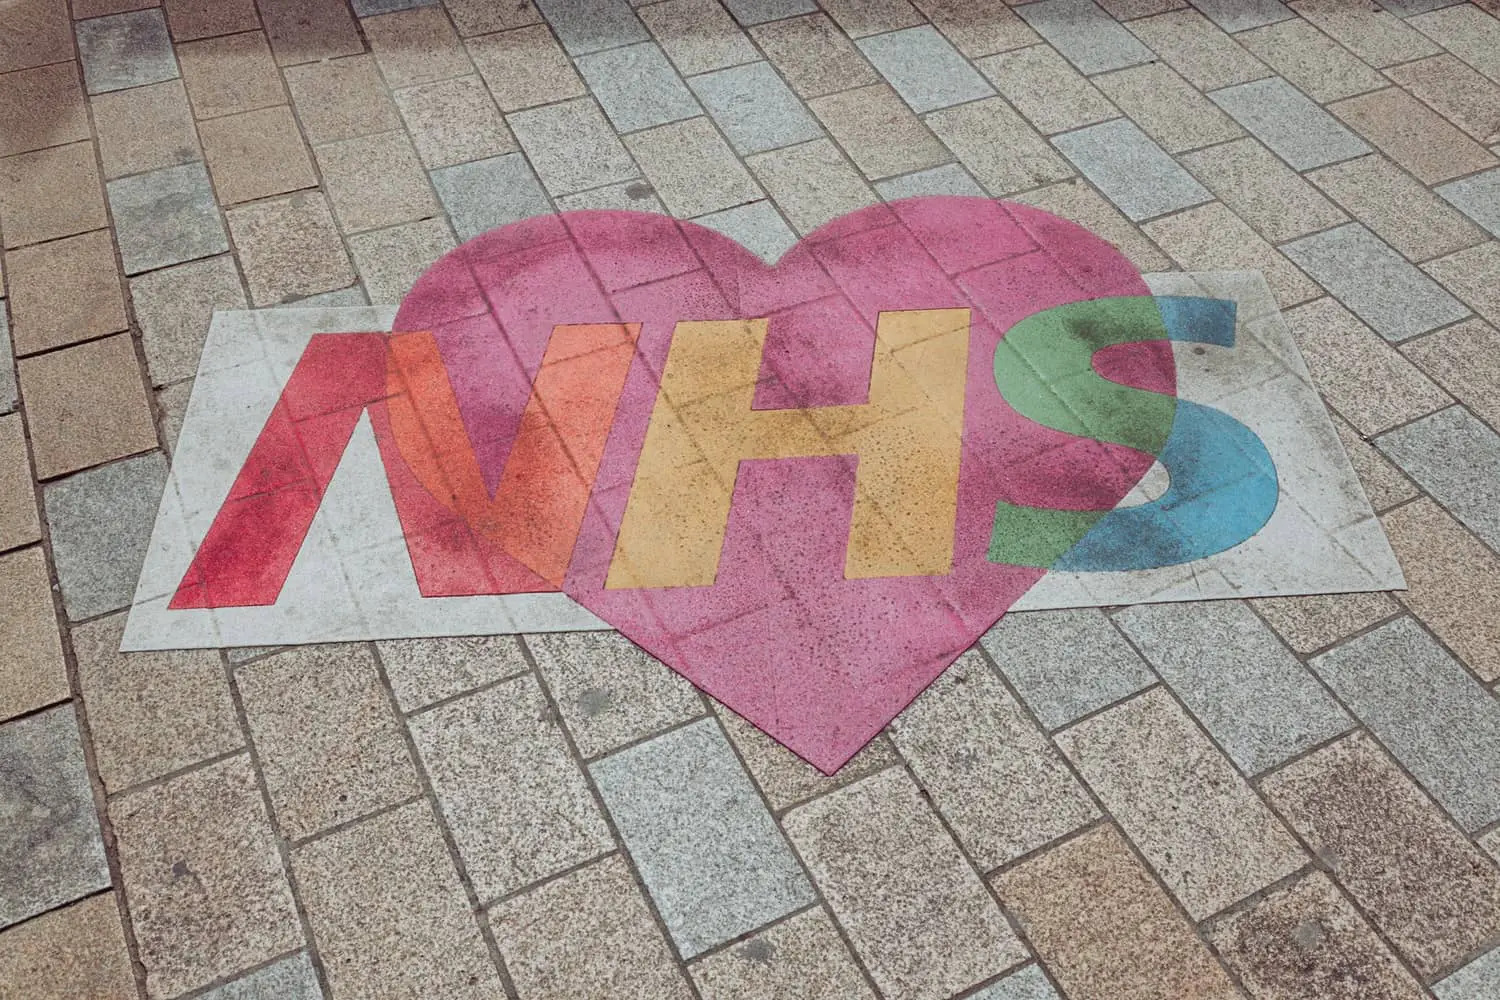 Love the NHS floor mural